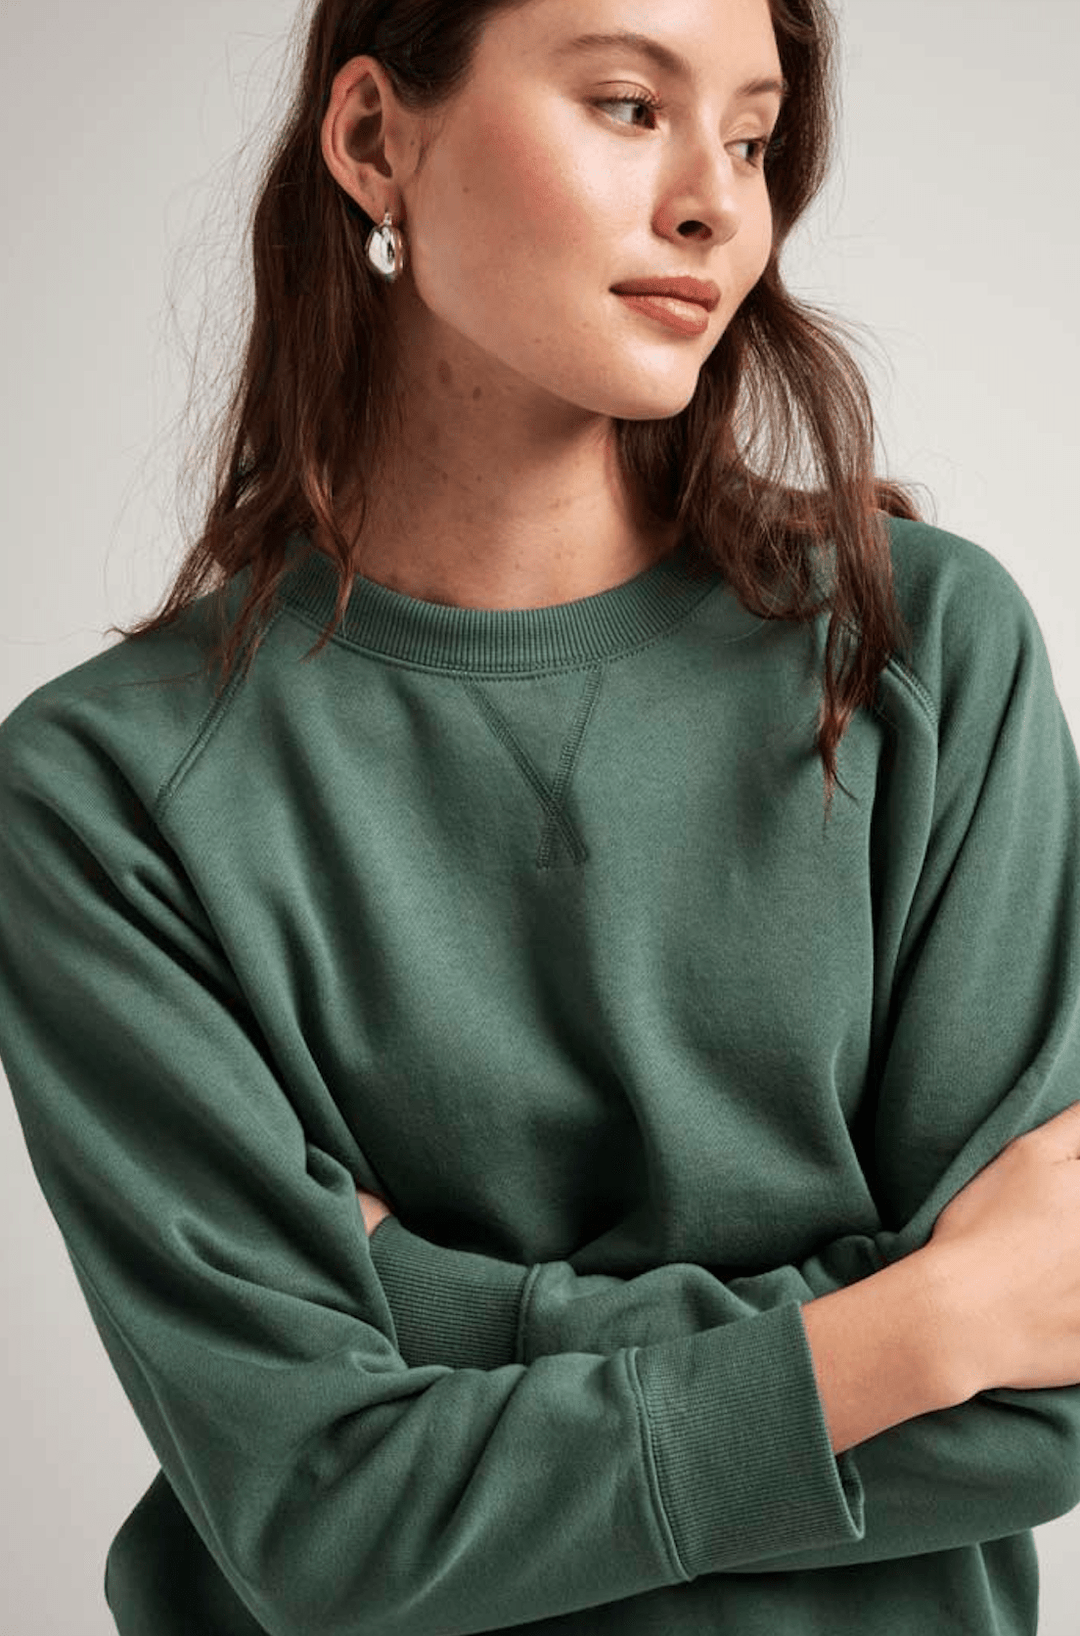 Richer Poorer sweatshirt Richer Poorer Recycled Fleece Sweatshirt